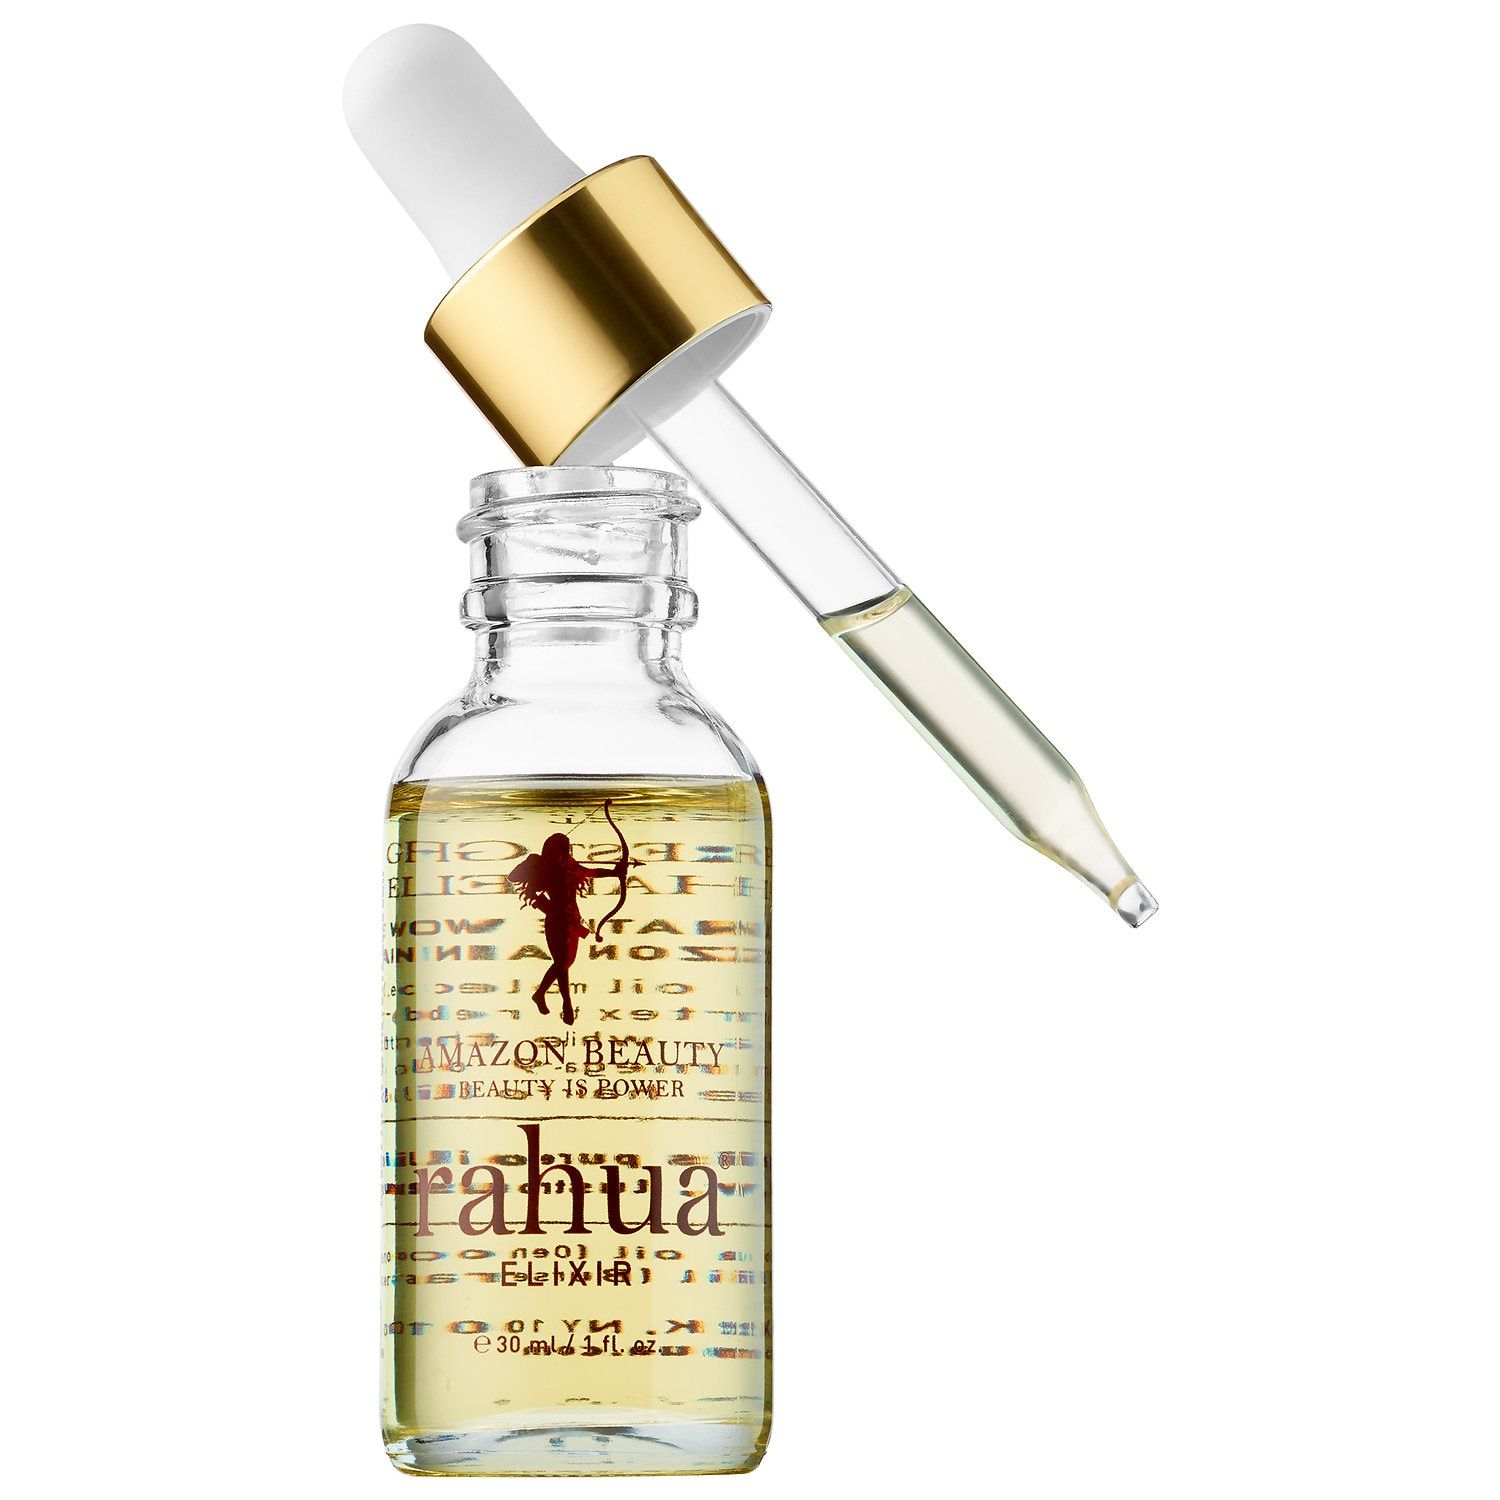 Rahua Hair Elixir